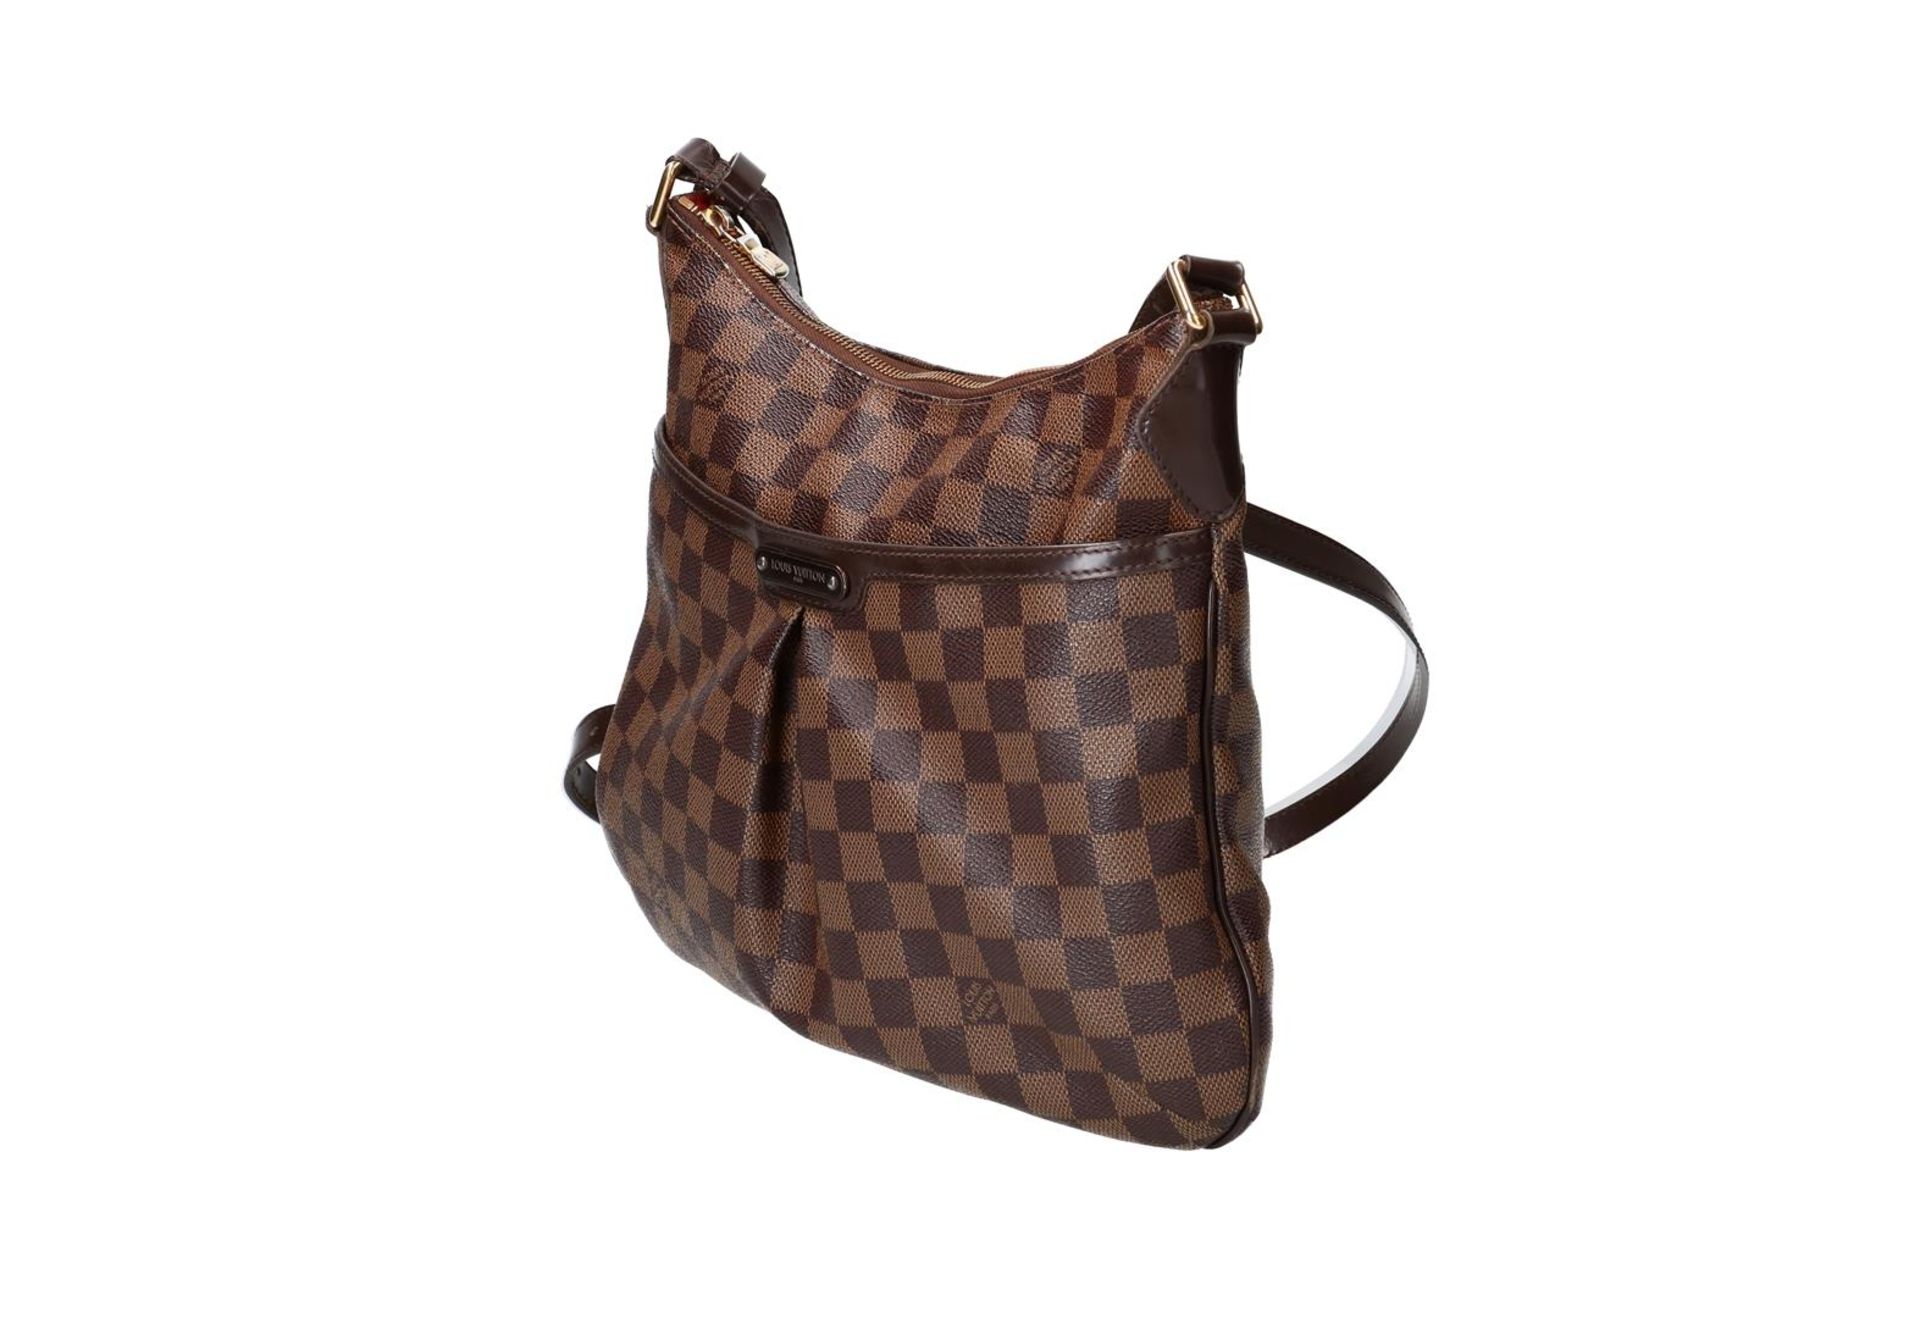 Louis Vuitton, brown canvas shoulder bag, 'Bloomsberry', no. CT0111. H x W x D: 27 x 31 x 3 cm. - Image 4 of 5